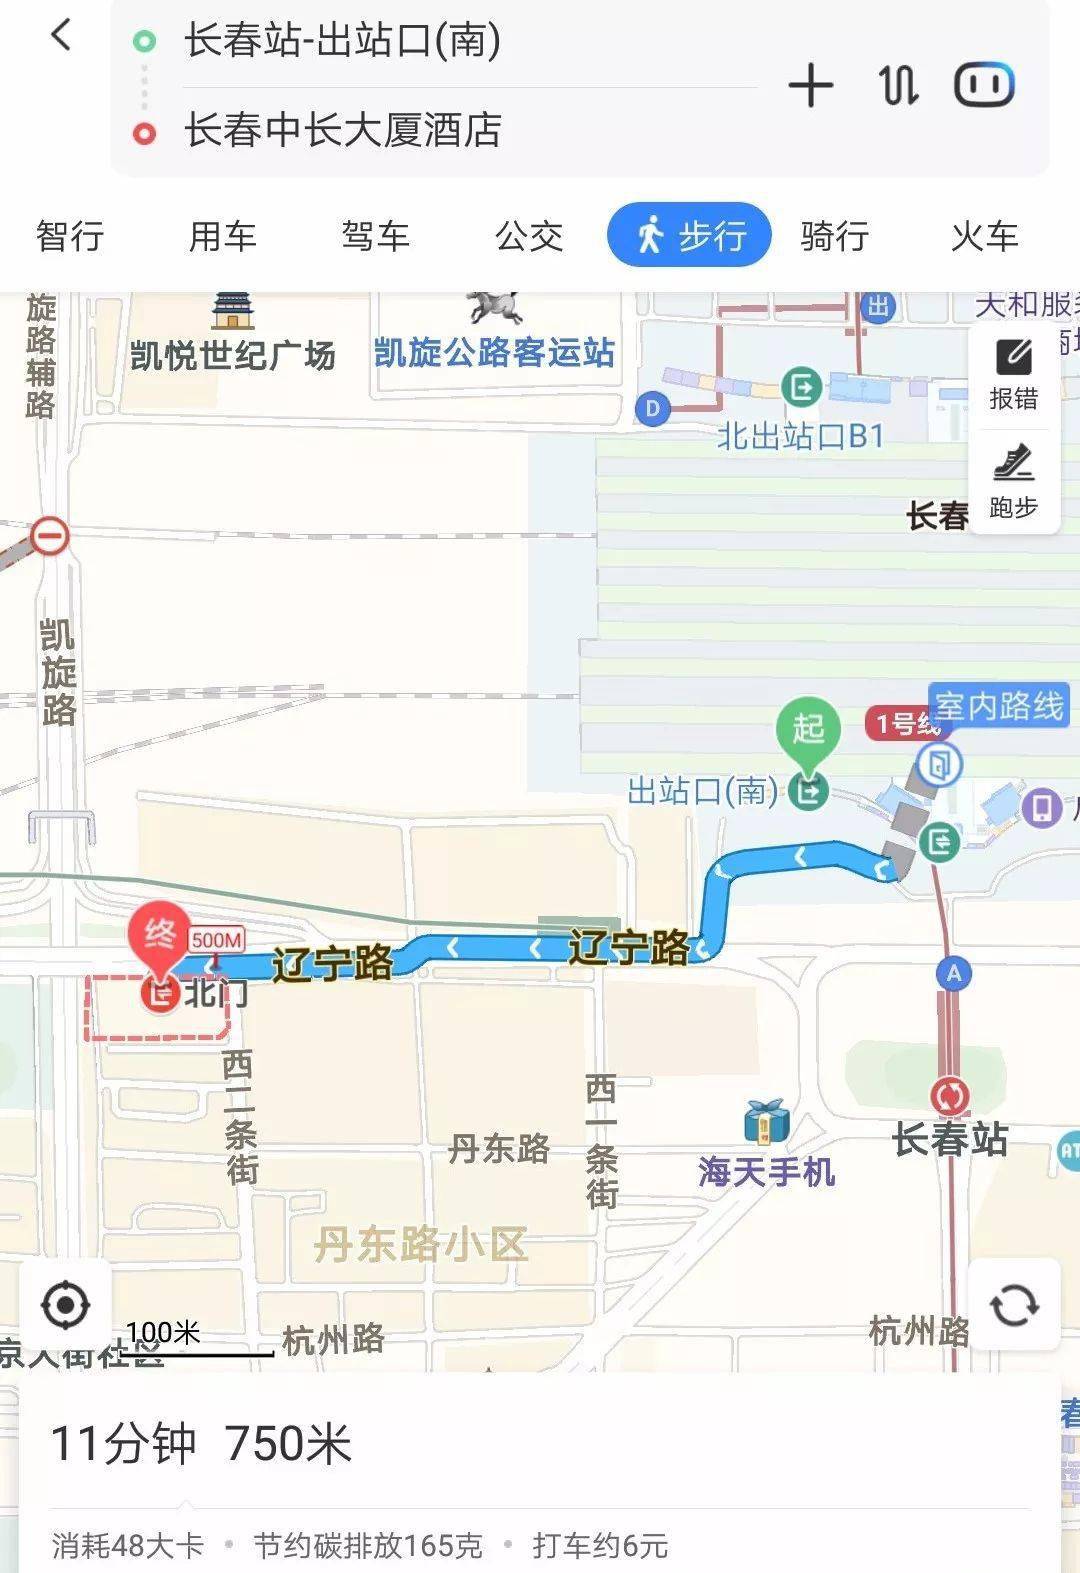 步行(11分钟) → 750米长春站(南出口)01点击地图定位开启导航吉林省